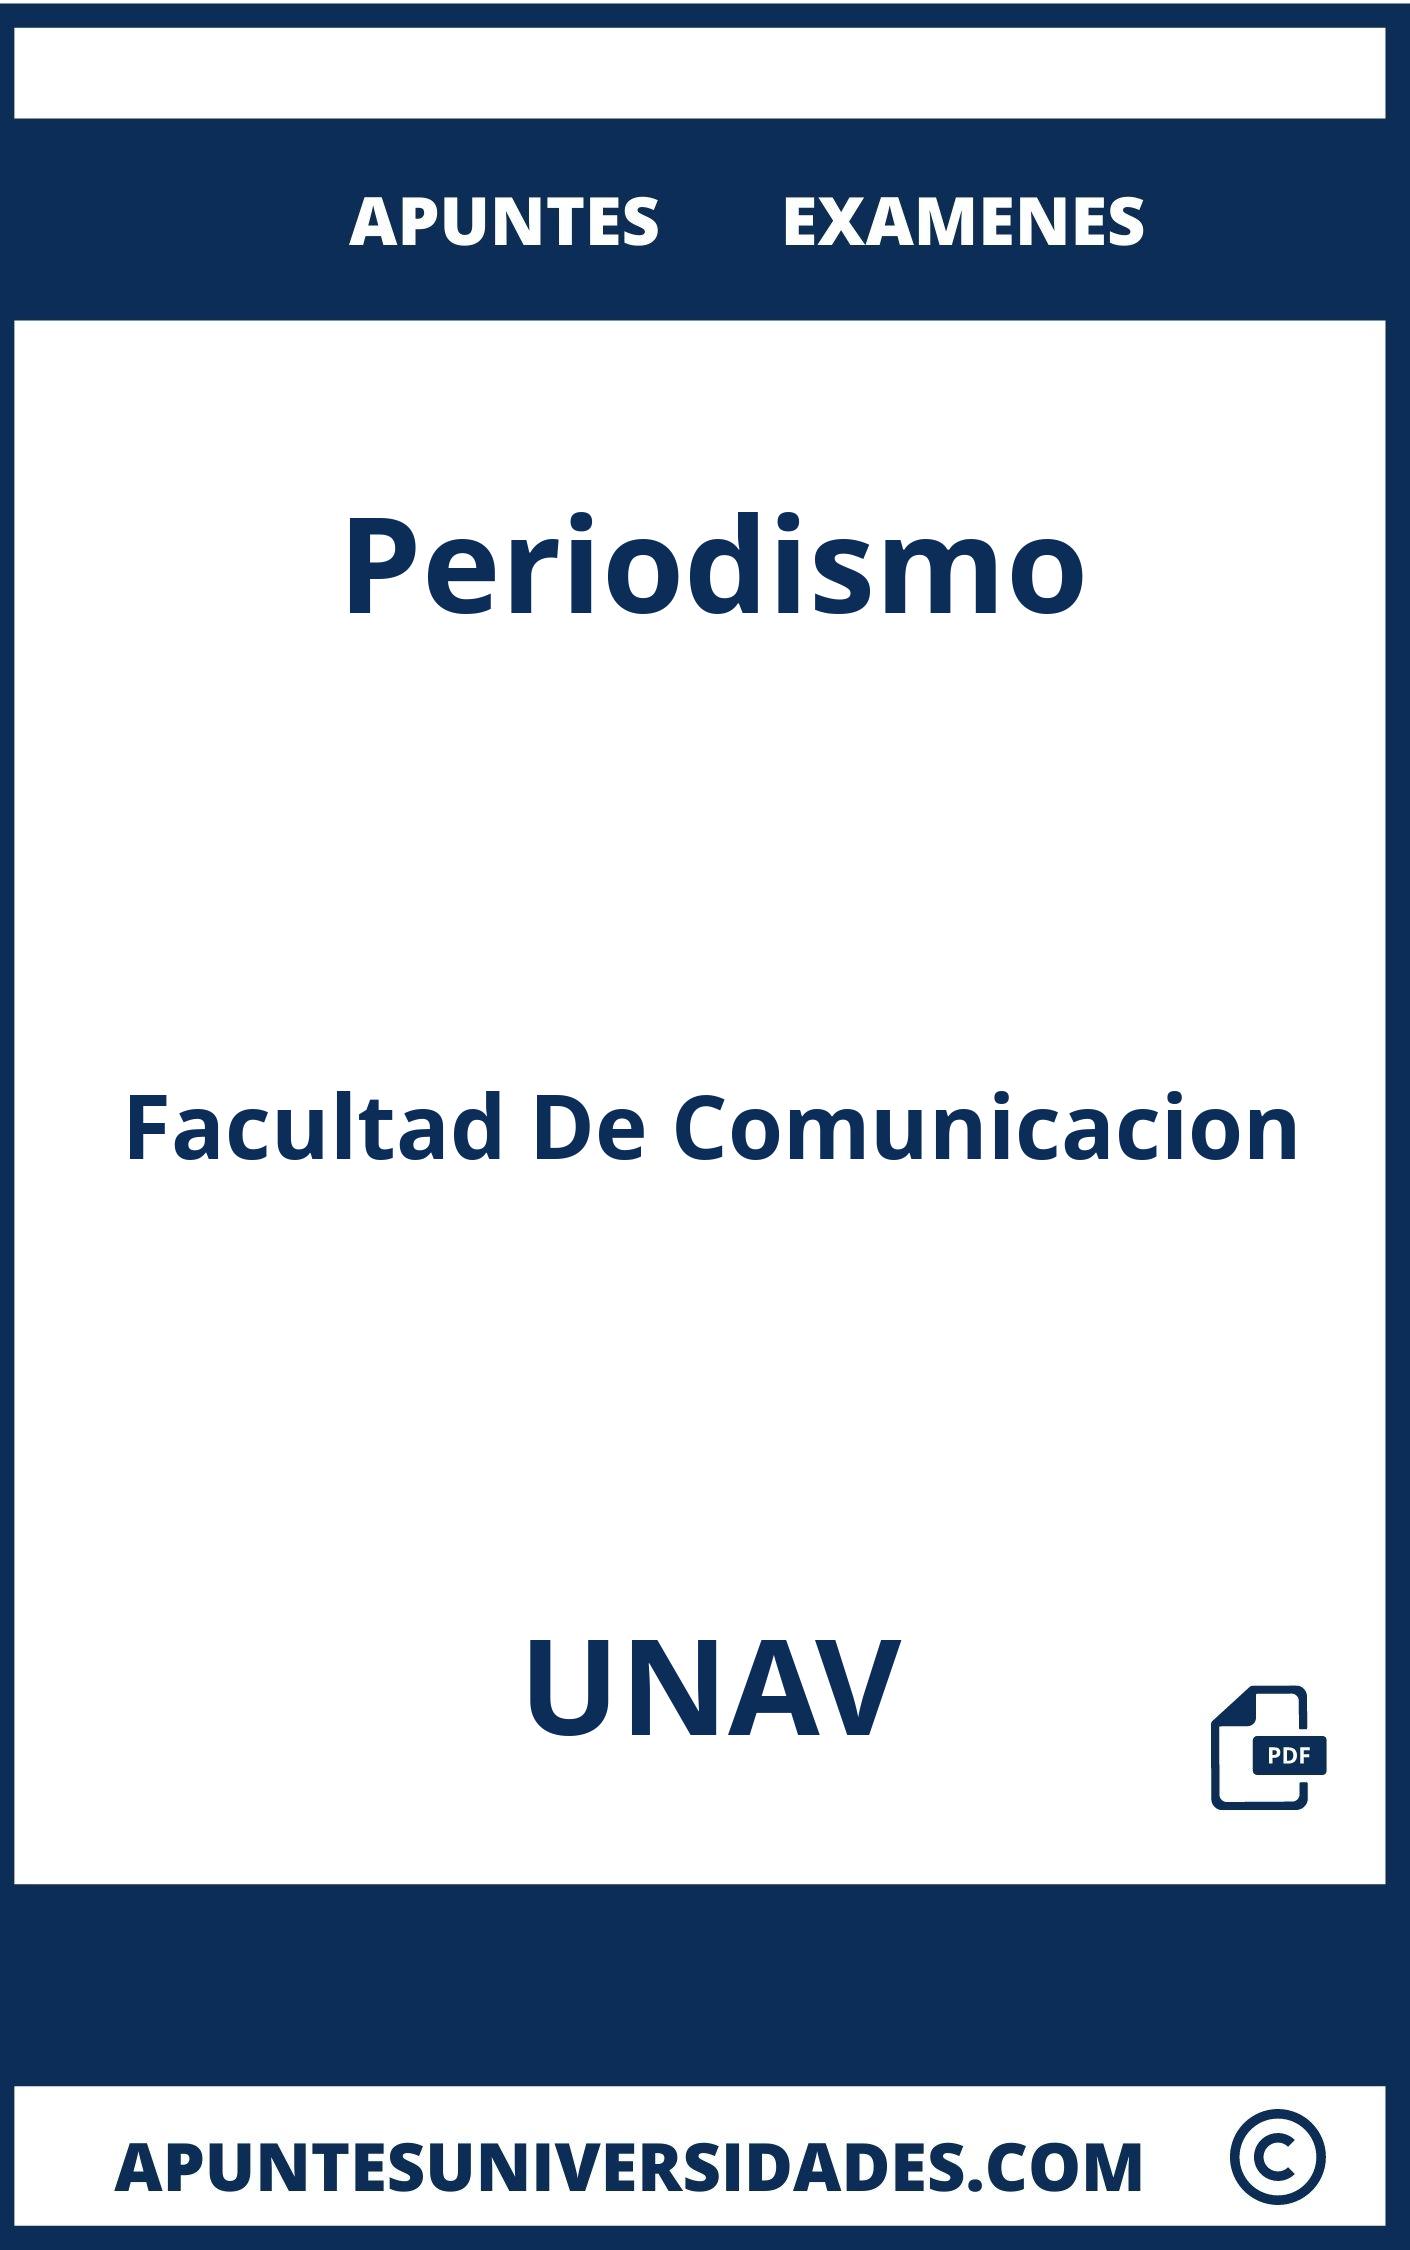 Apuntes y Examenes de Periodismo UNAV